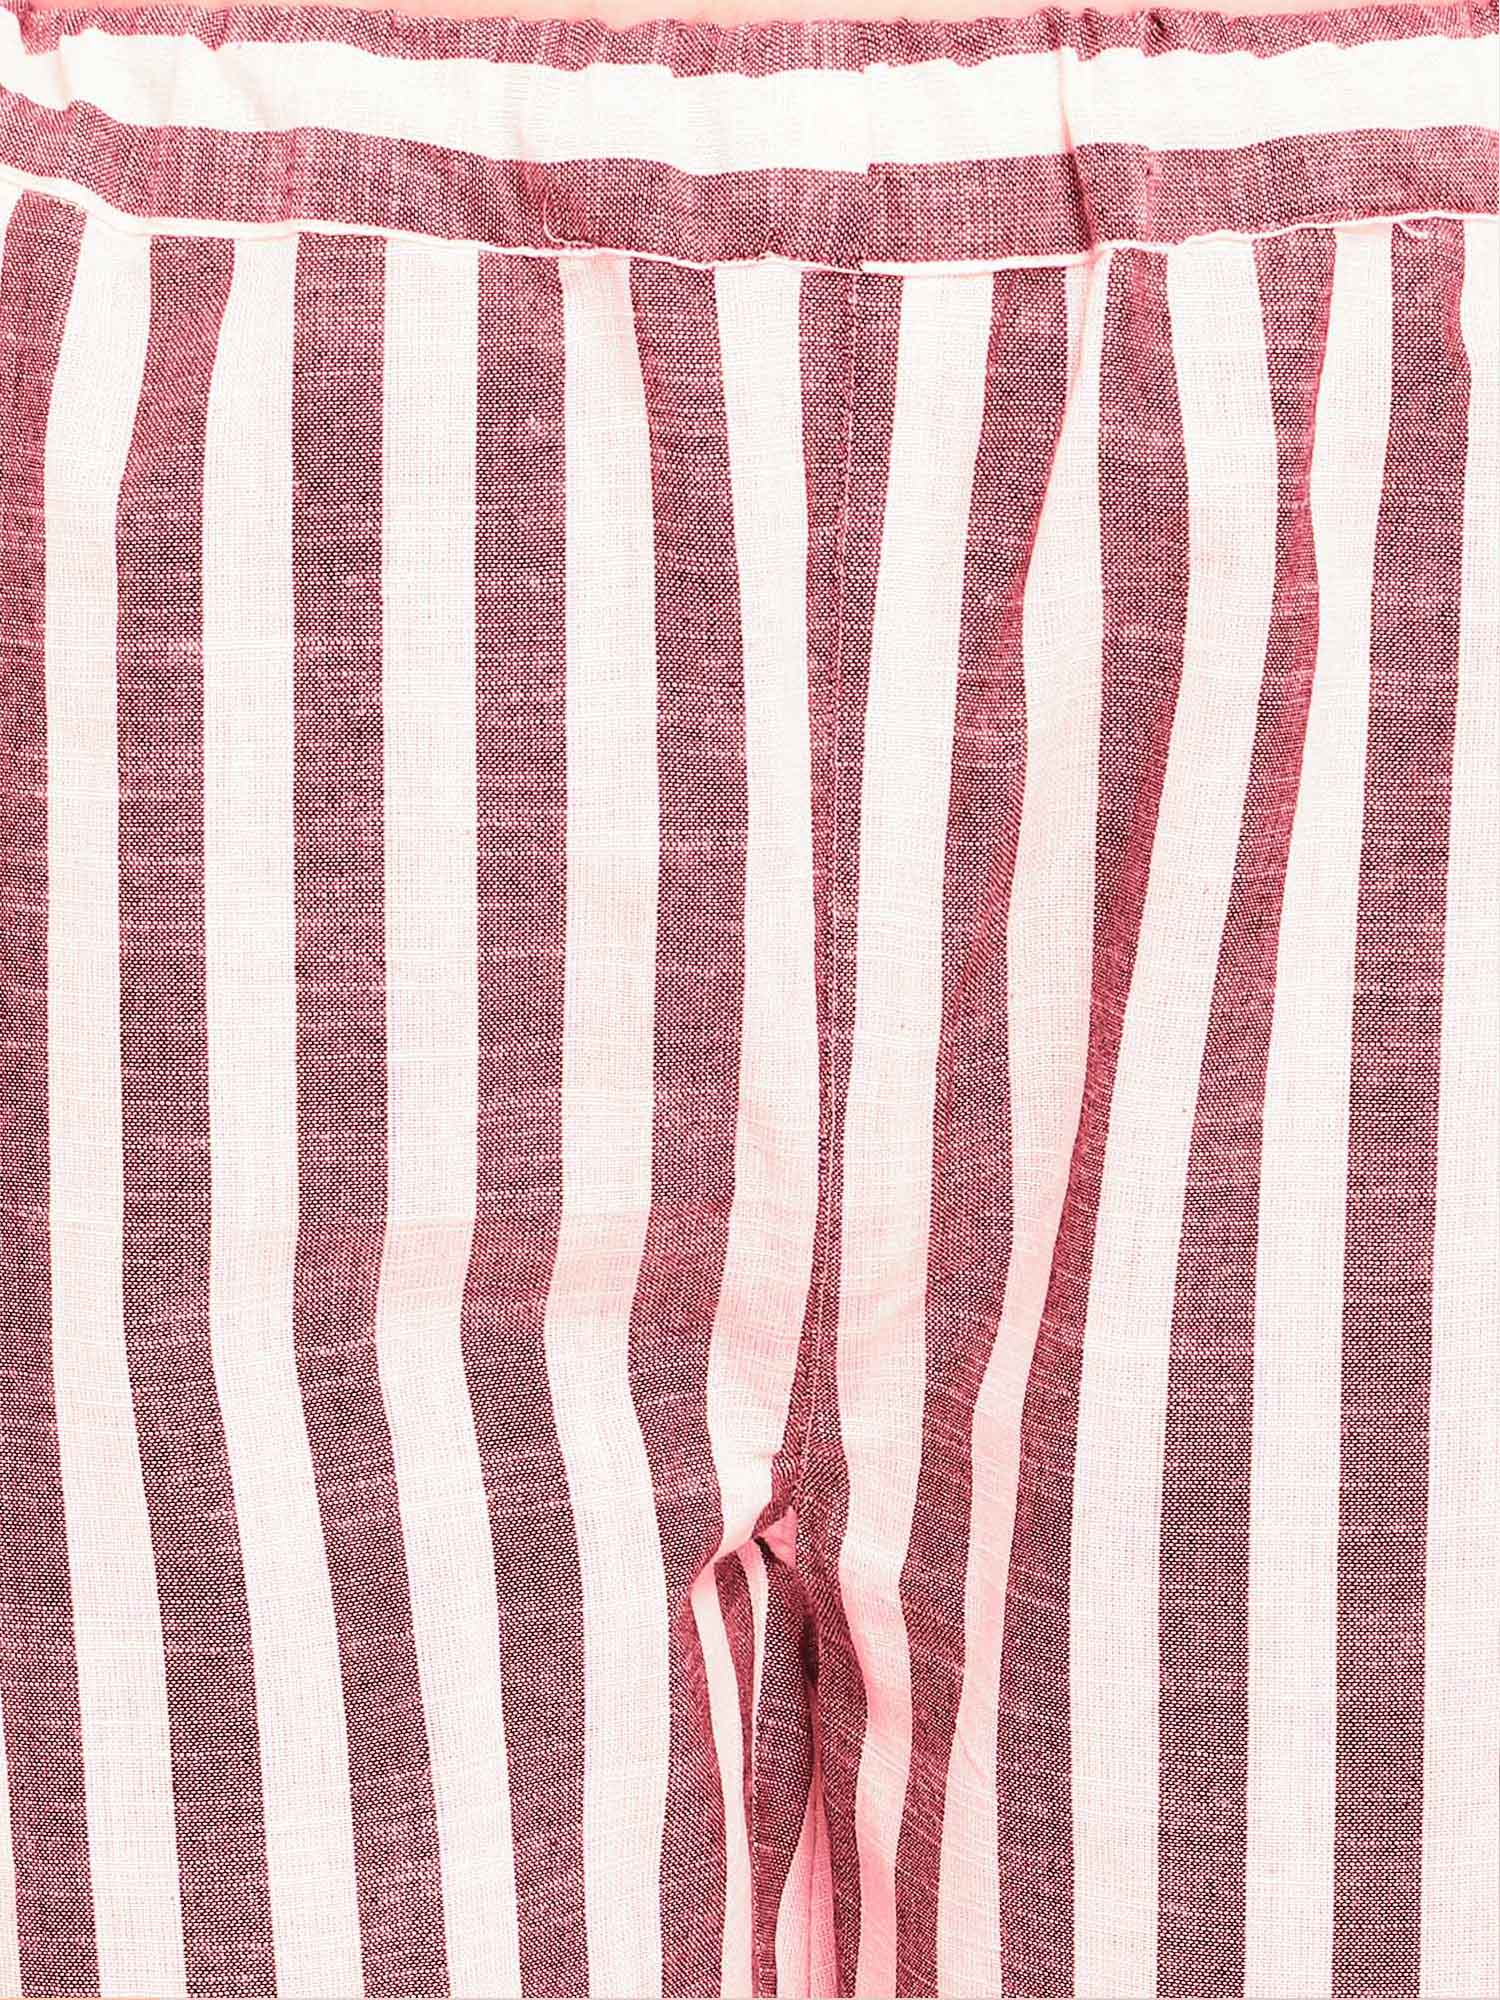 Women's Red Stripe Pure Linen Summer Pajama Set - MESMORA FASHION